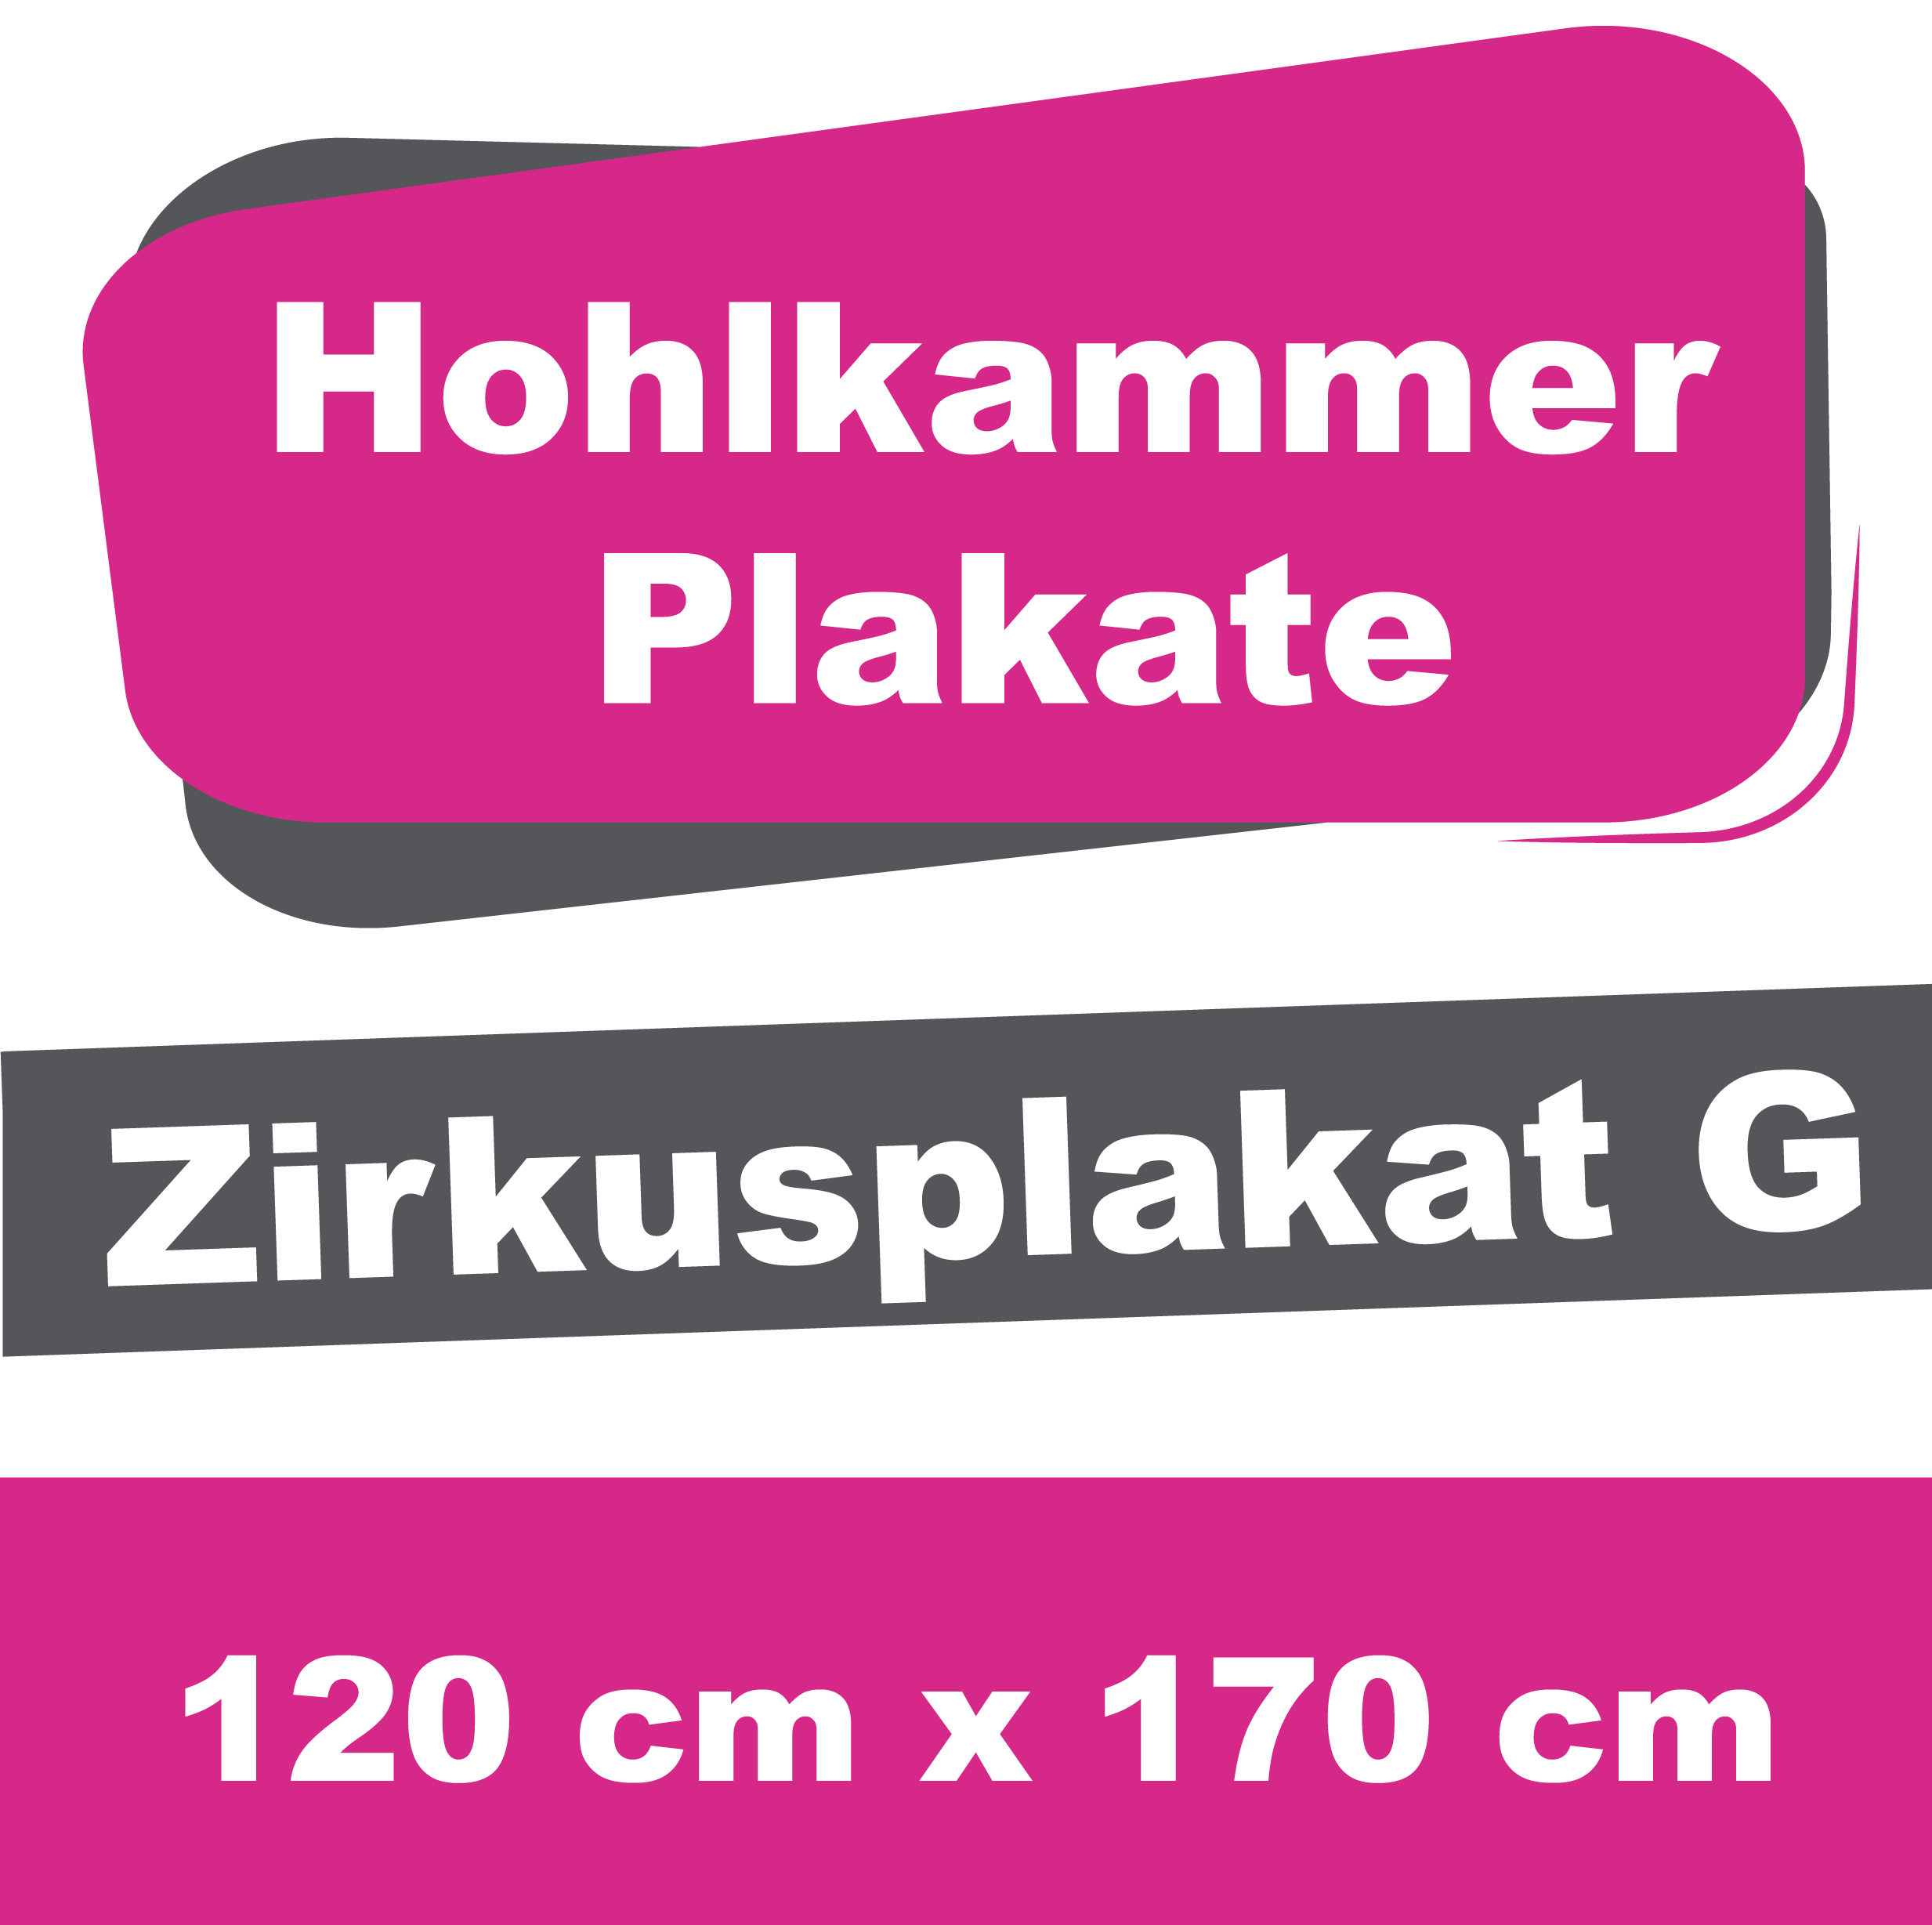 Wahl-/Event-/Zirkusplakat G- Hohlkammerplakate 120 x 170 cm